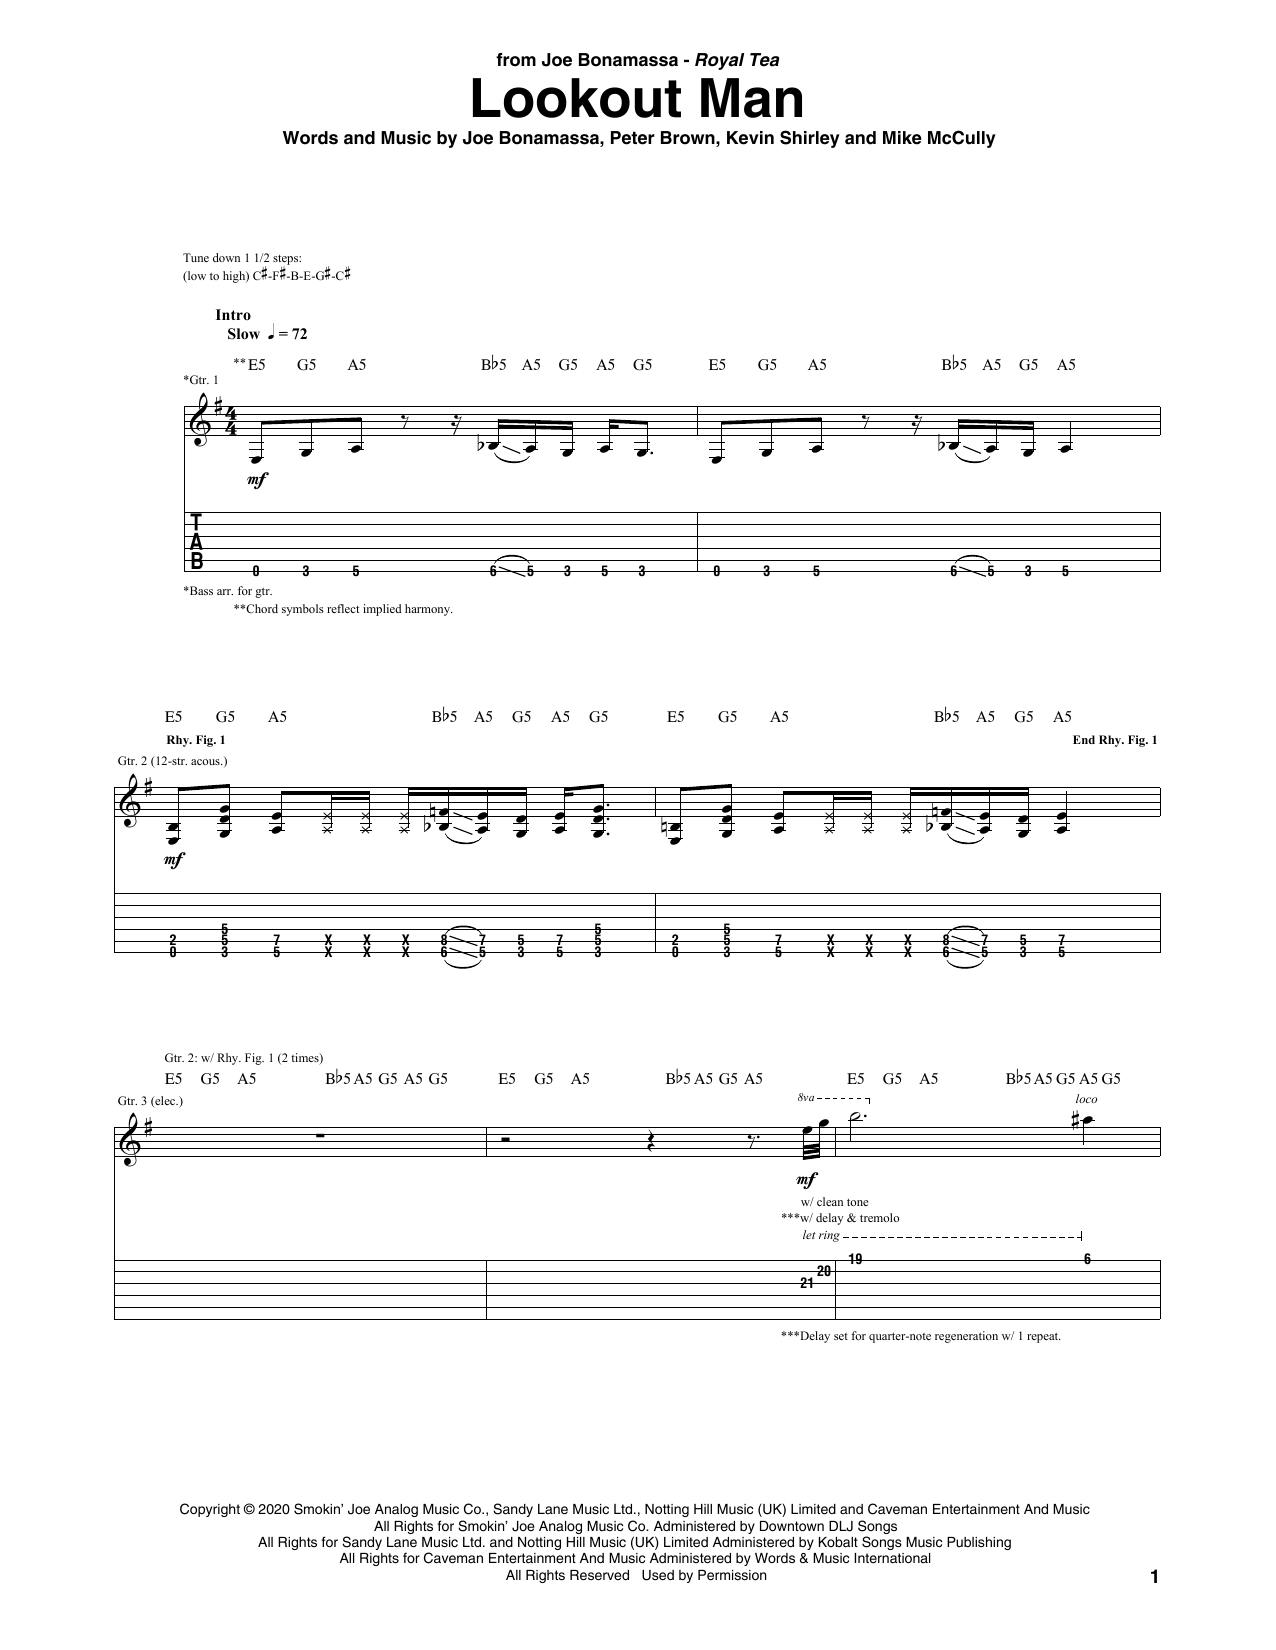 Joe Bonamassa Lookout Man Sheet Music Notes & Chords for Guitar Tab - Download or Print PDF